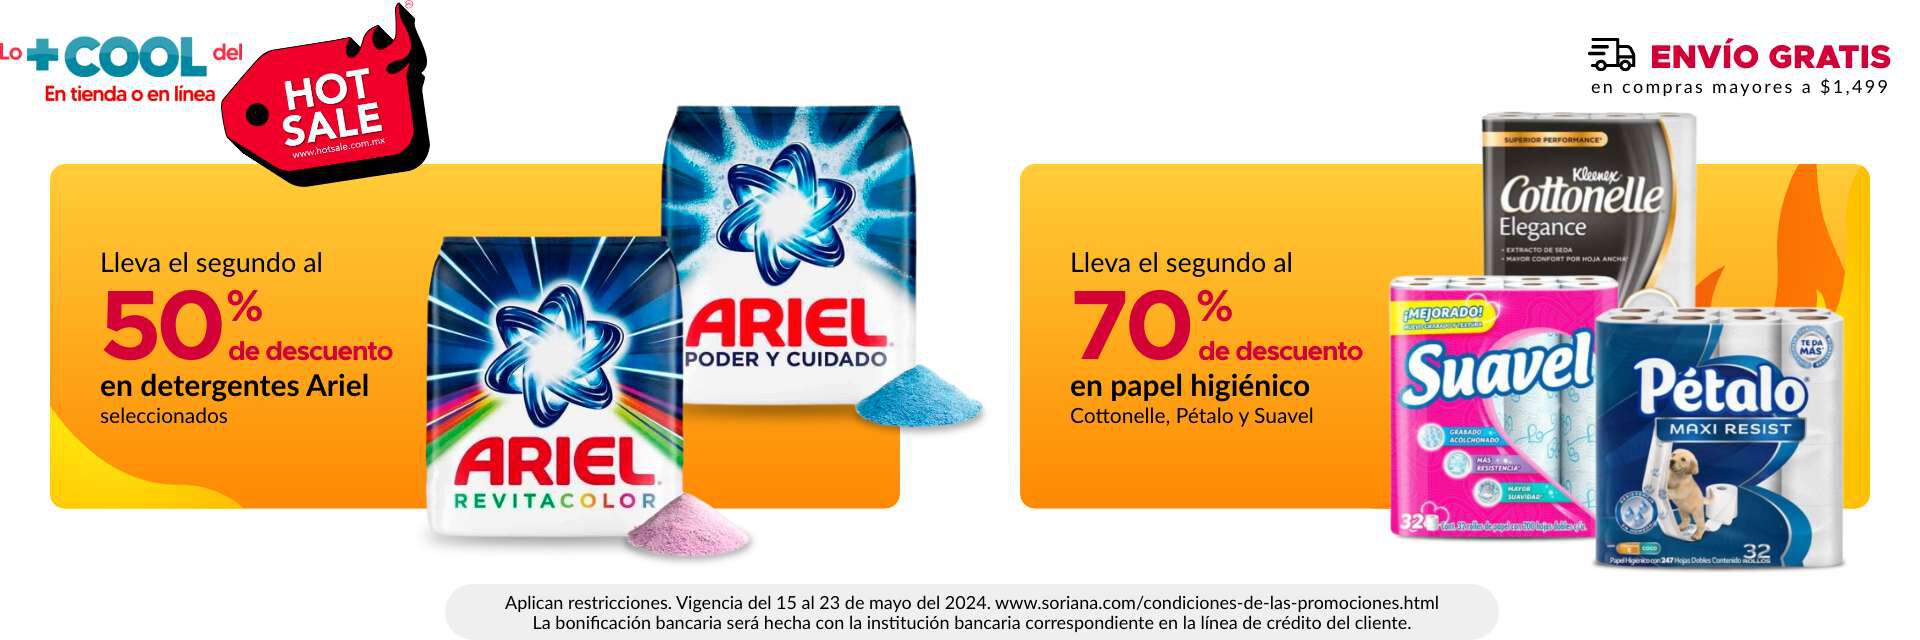 2do al 50% en detergentes Ariel seleccionados y 2do al 70% en papel higiénico